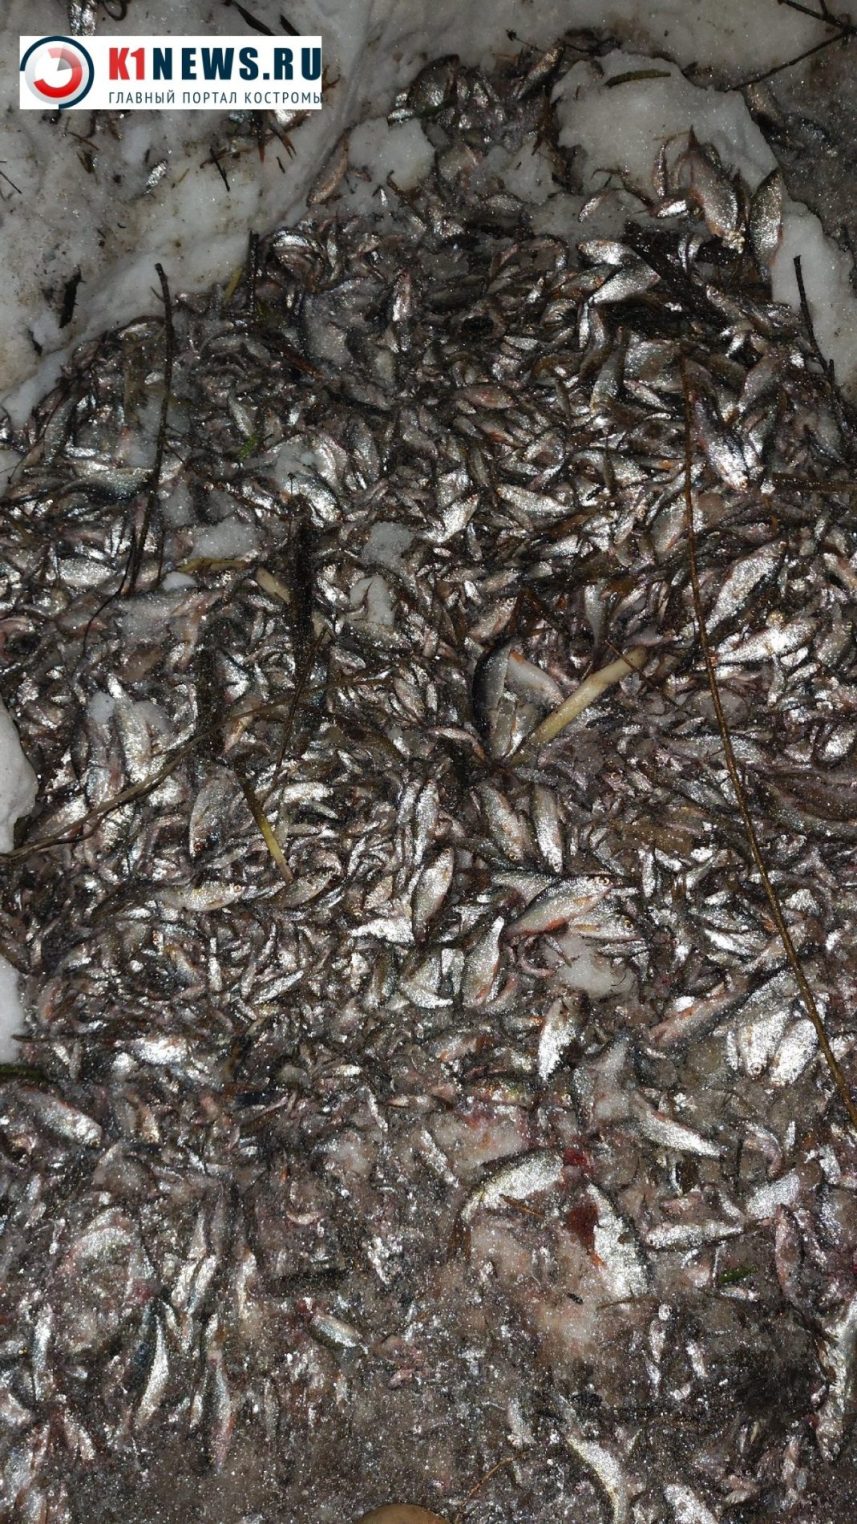 Рыба массово выбросилась на берег реки в Костроме